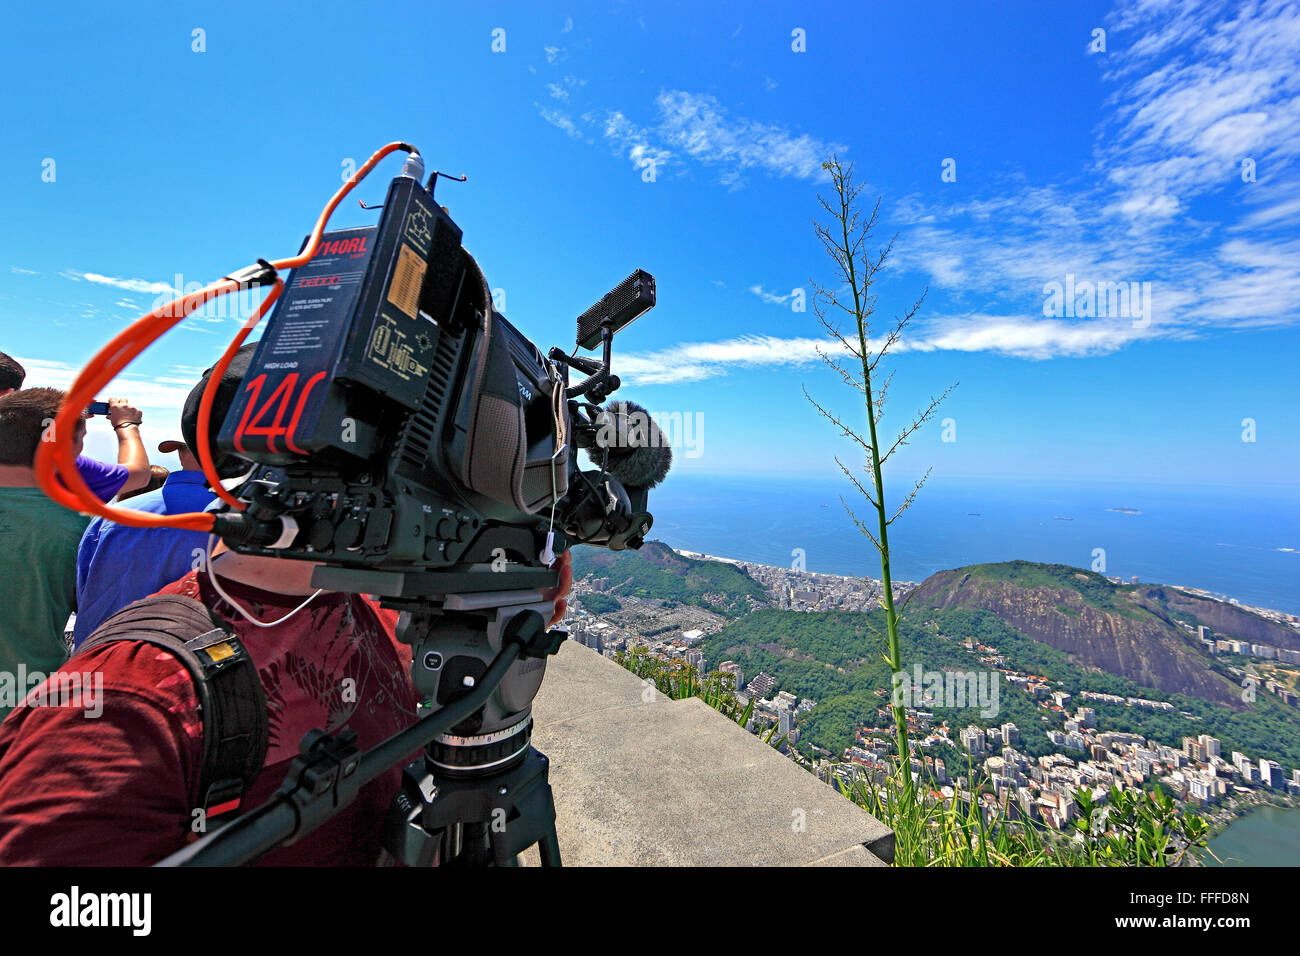 View from Corcovado in Rio de Janeiro, Brazil Stock Photo